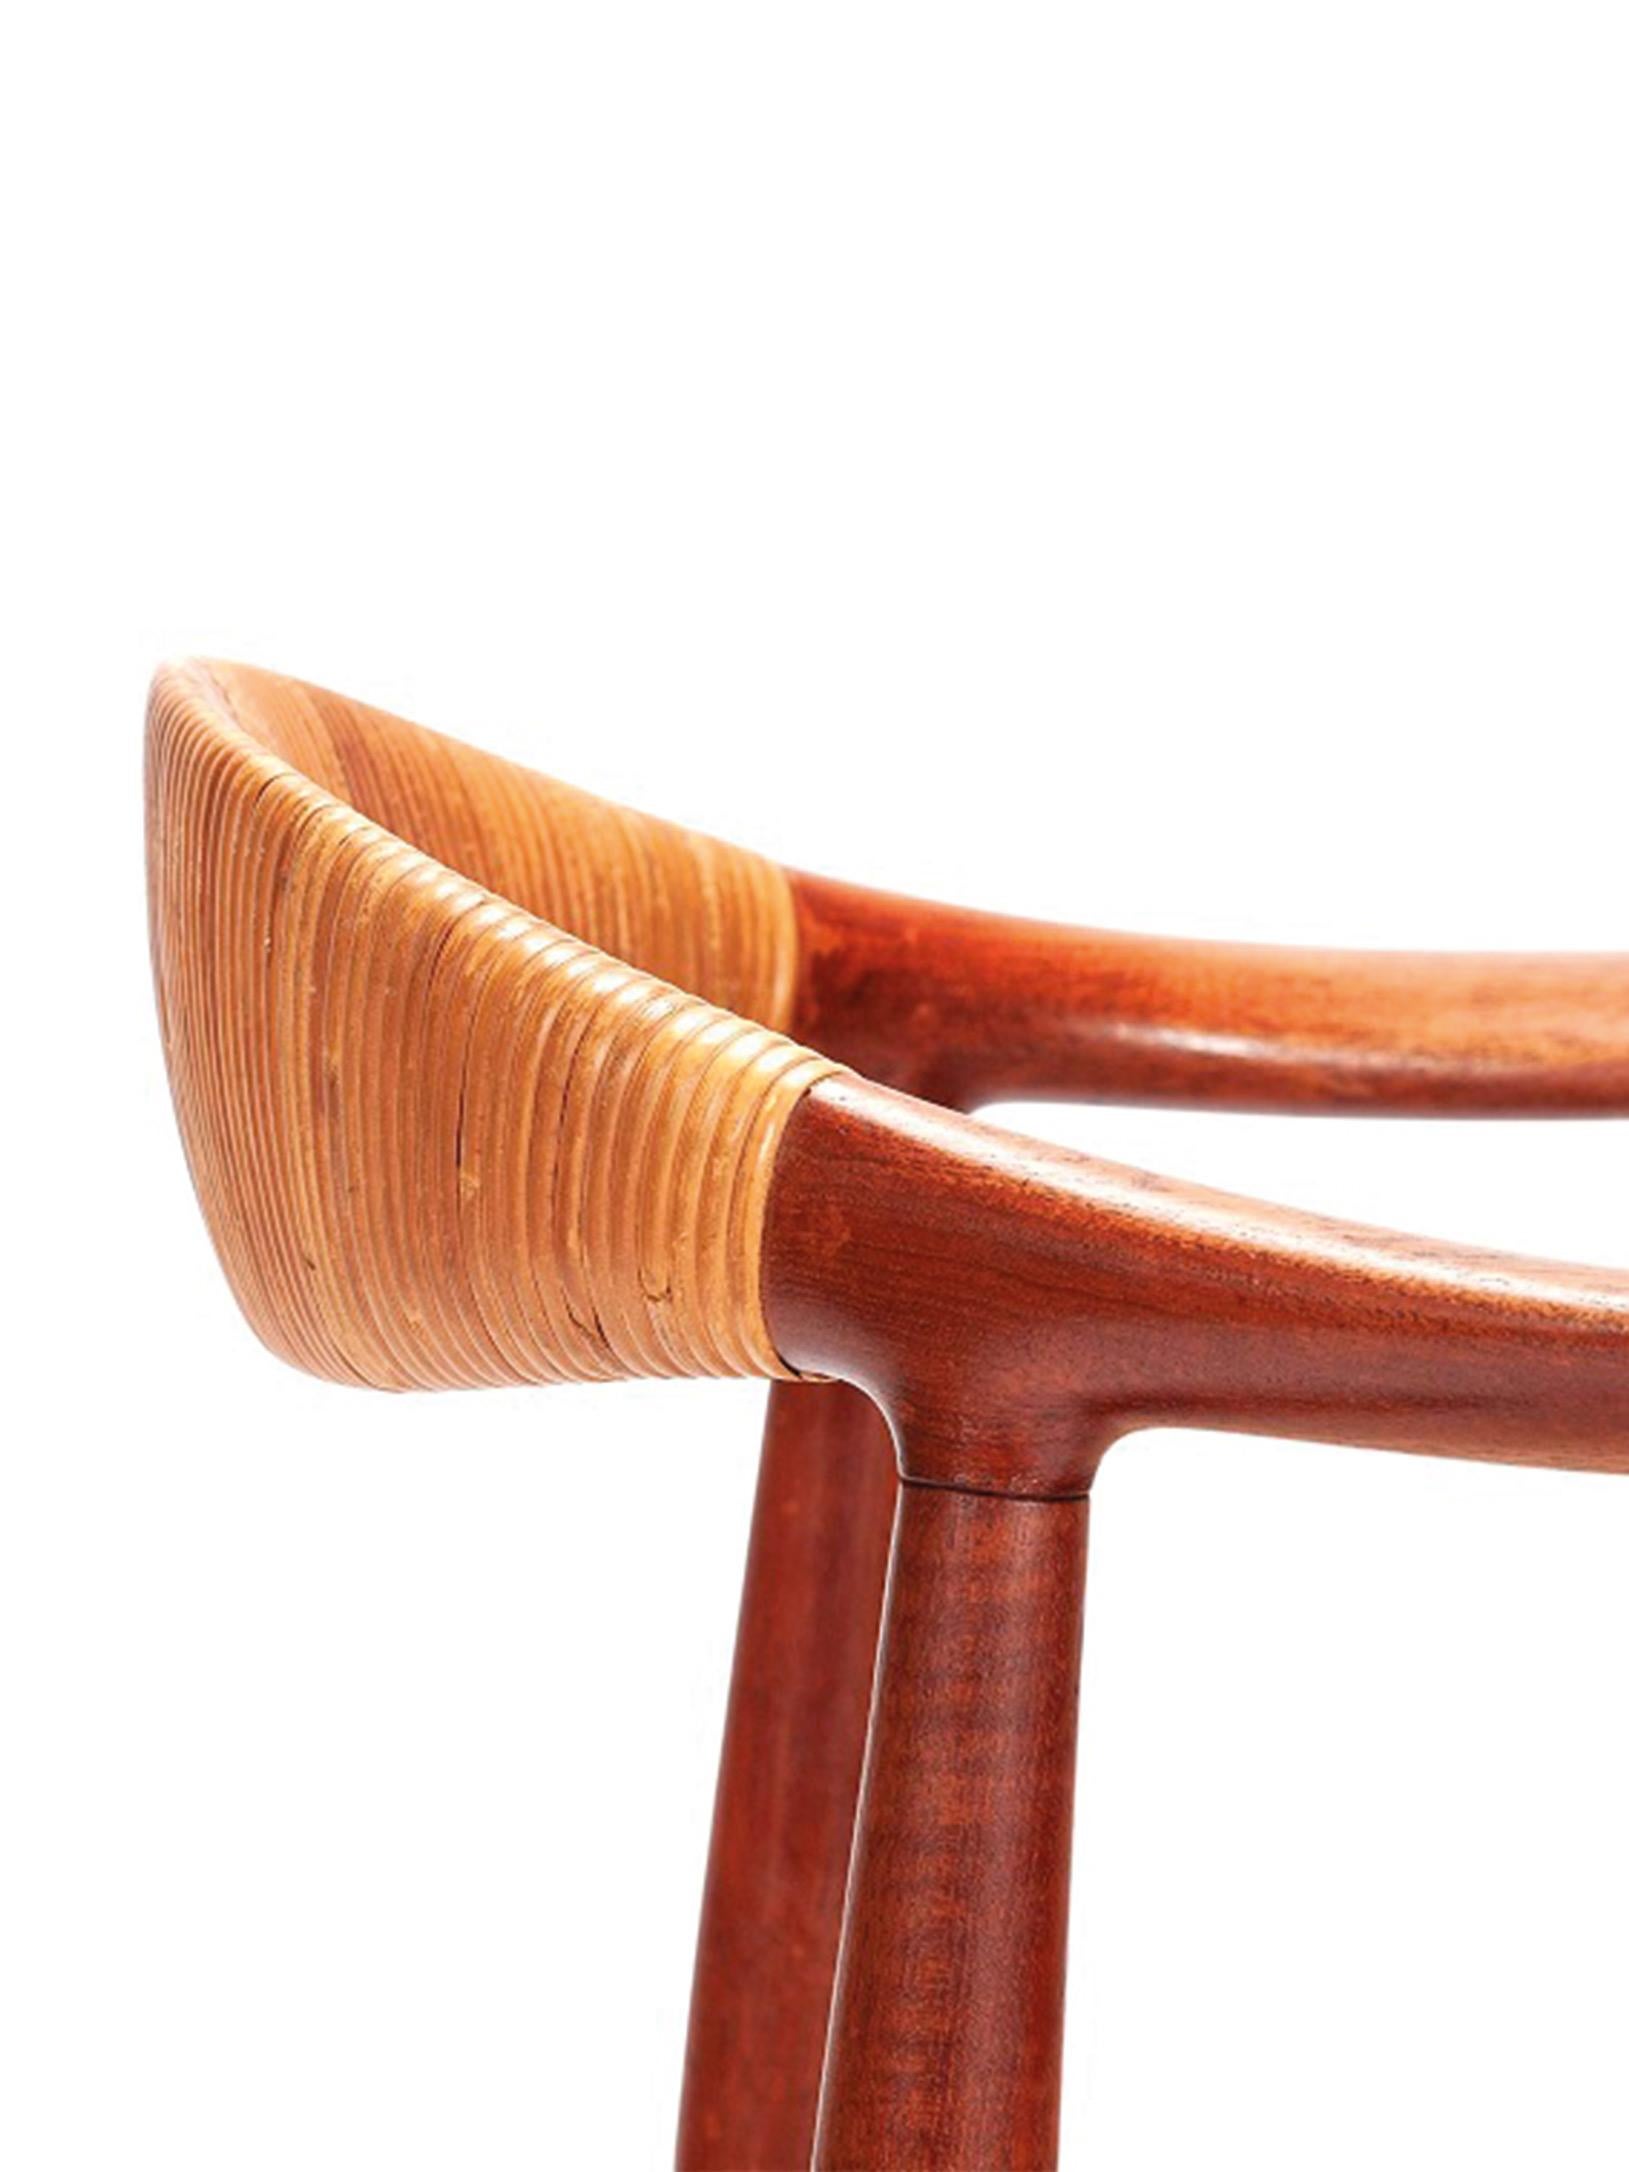 Le fauteuil le plus emblématique de Hans Wegner, dans sa première version. C'est ce fauteuil qui a fait connaître le design scandinave aux États-Unis suite à l'article paru dans le magazine Interiors en 1950. Il est en parfait état et porte la